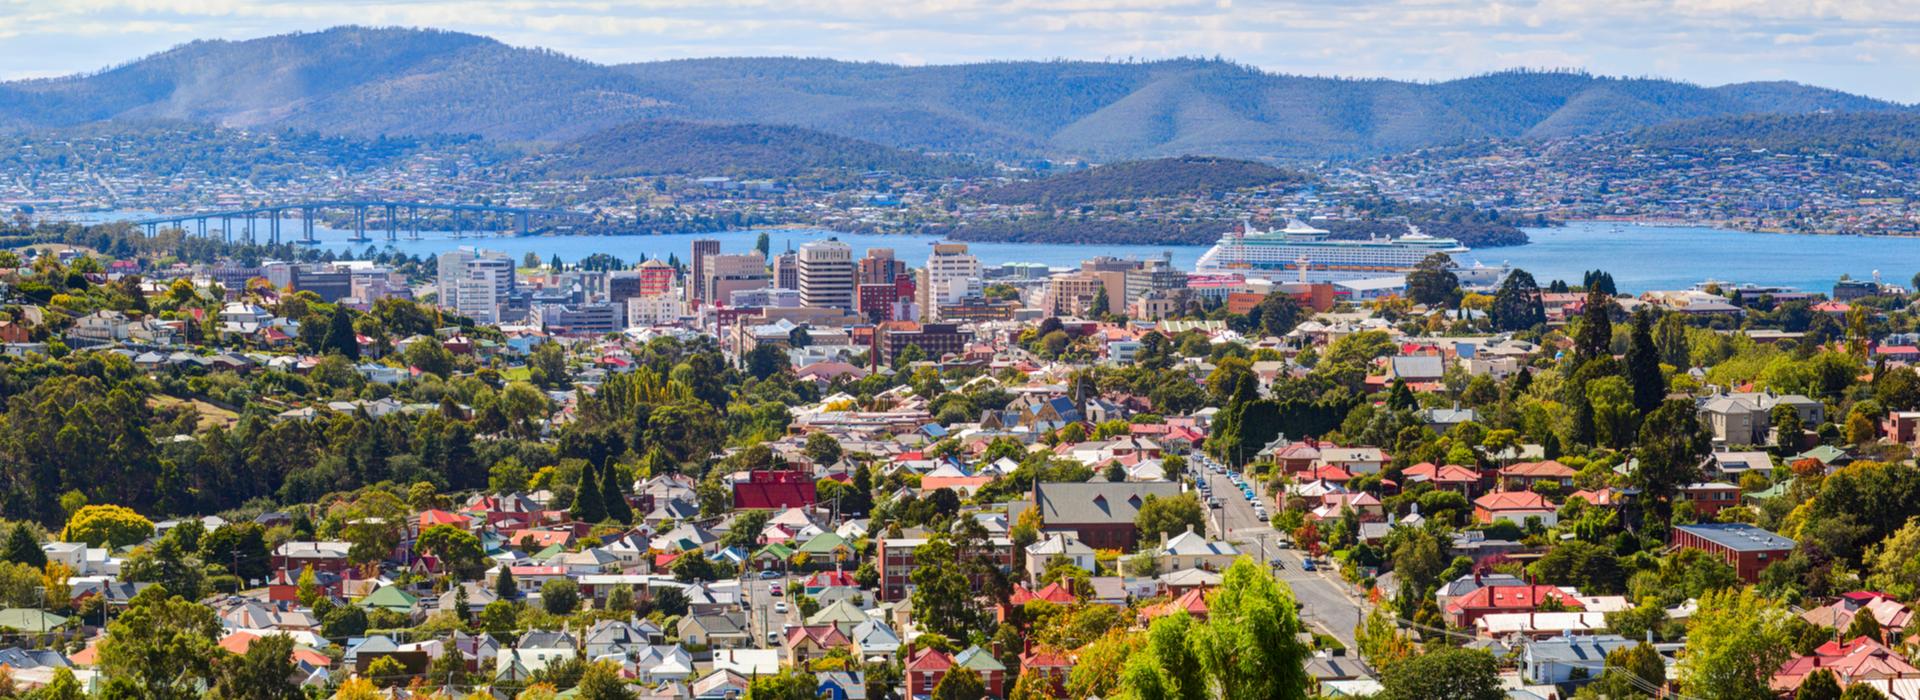 Hobart, Australien, Australien und Ozeanien